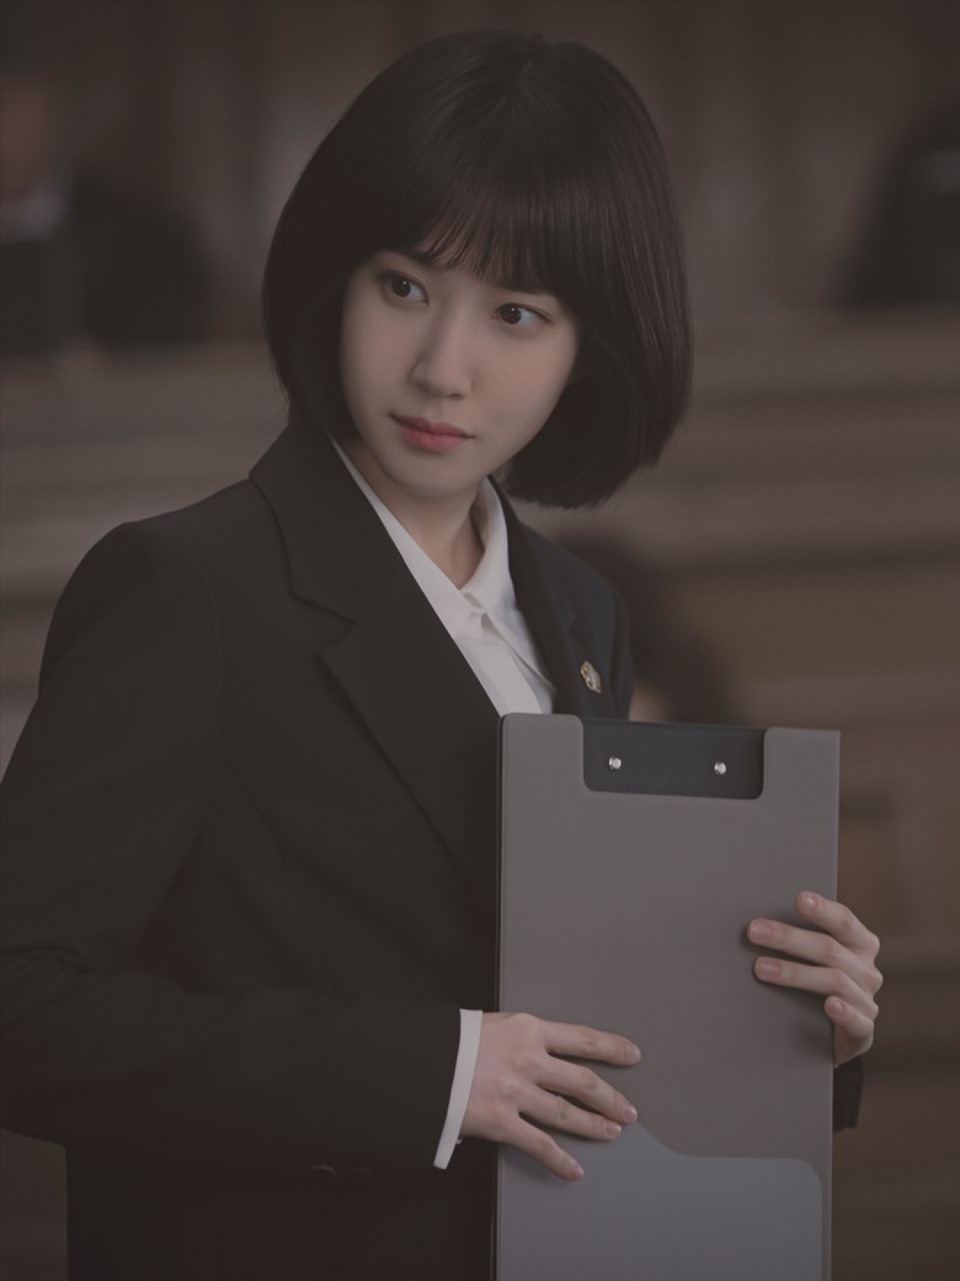 Bộ phim “Extraordinary Attorney Woo” đang tạo ra cơn sốt trên màn ảnh nhỏ xứ Hàn và châu Á. Ảnh: ENA.